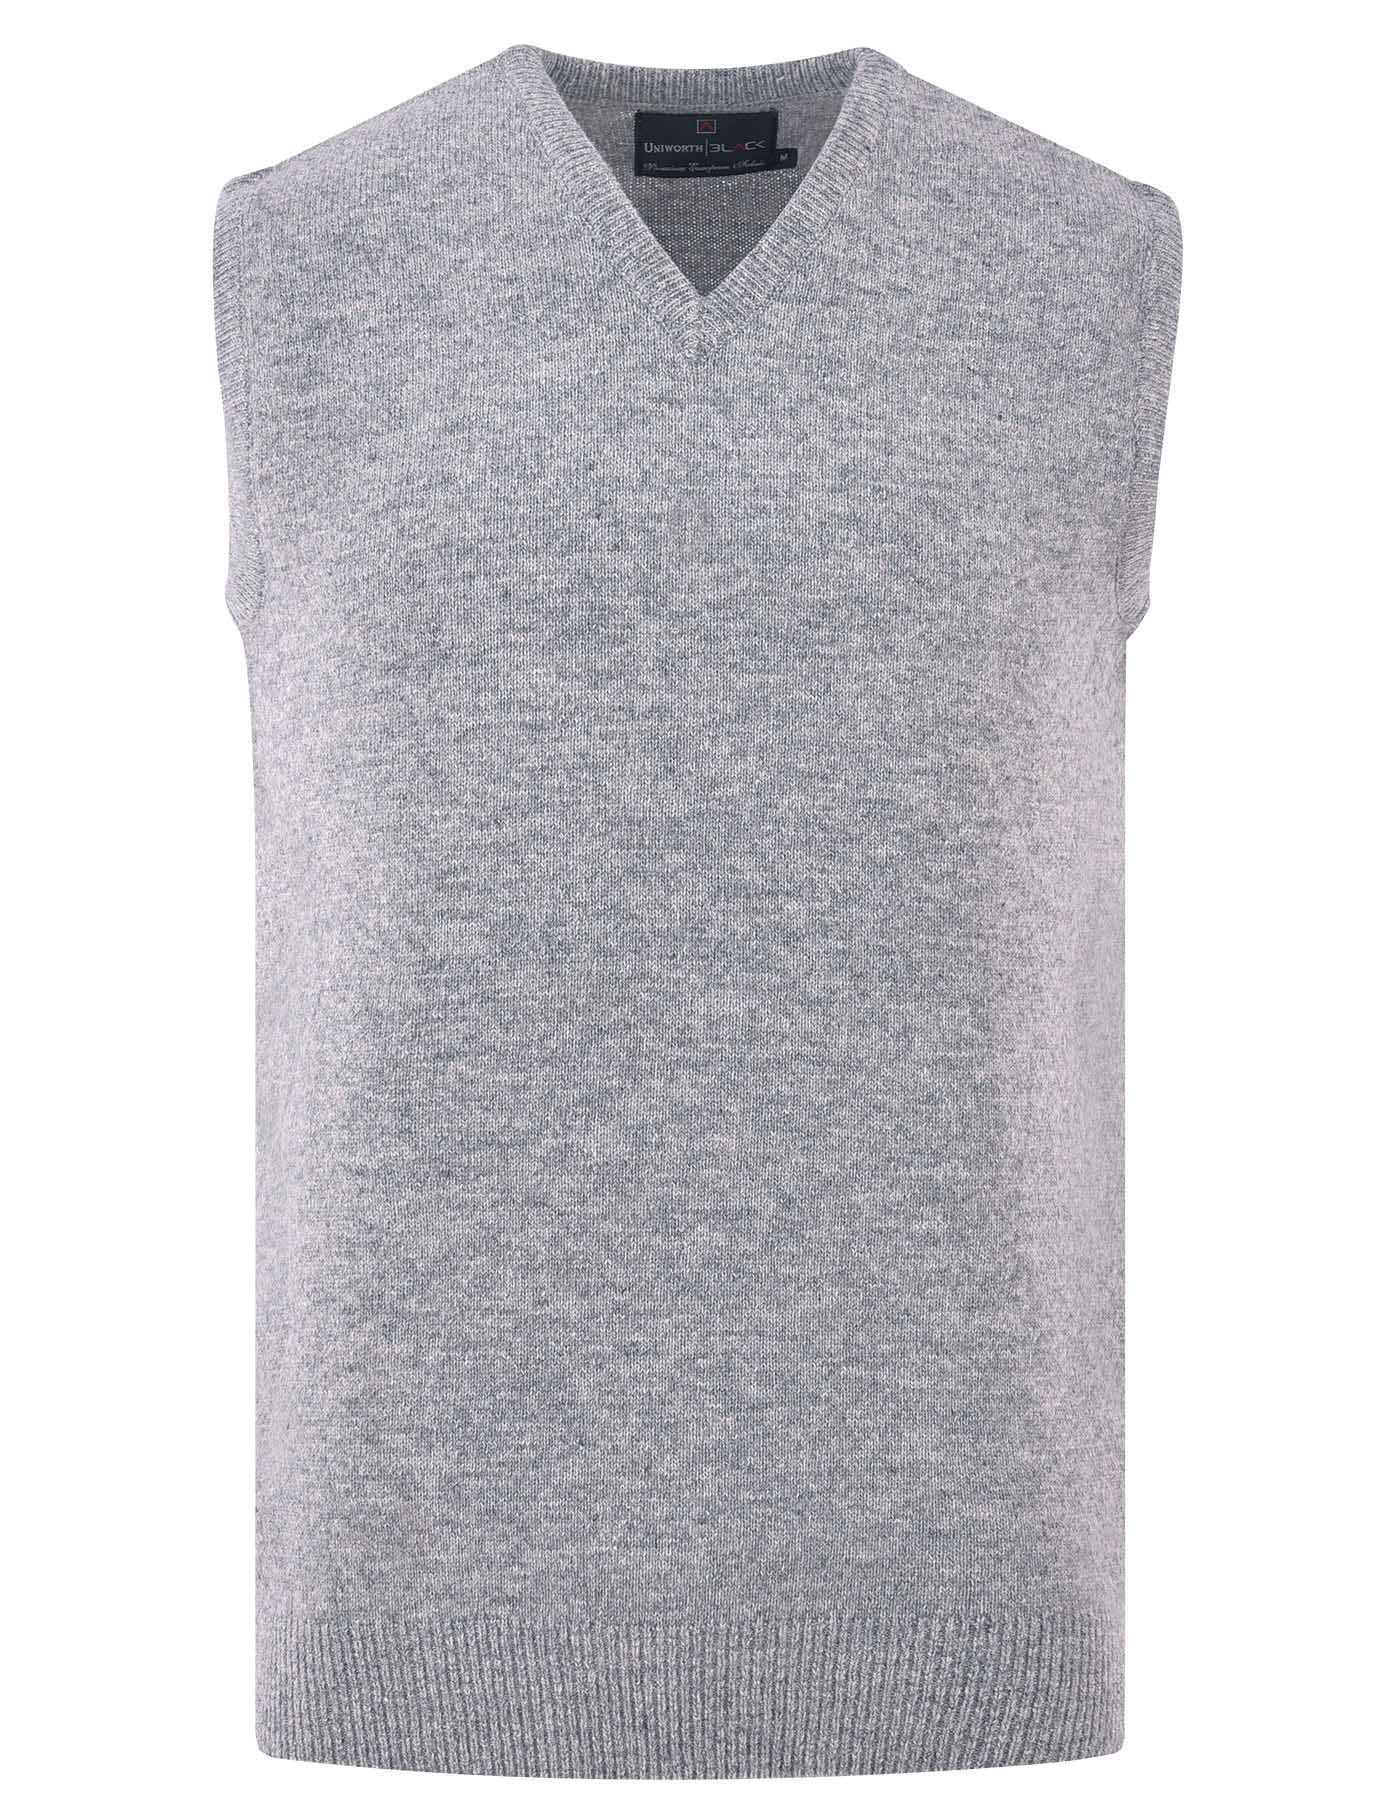 Grey Sleeveless Sweater For Men